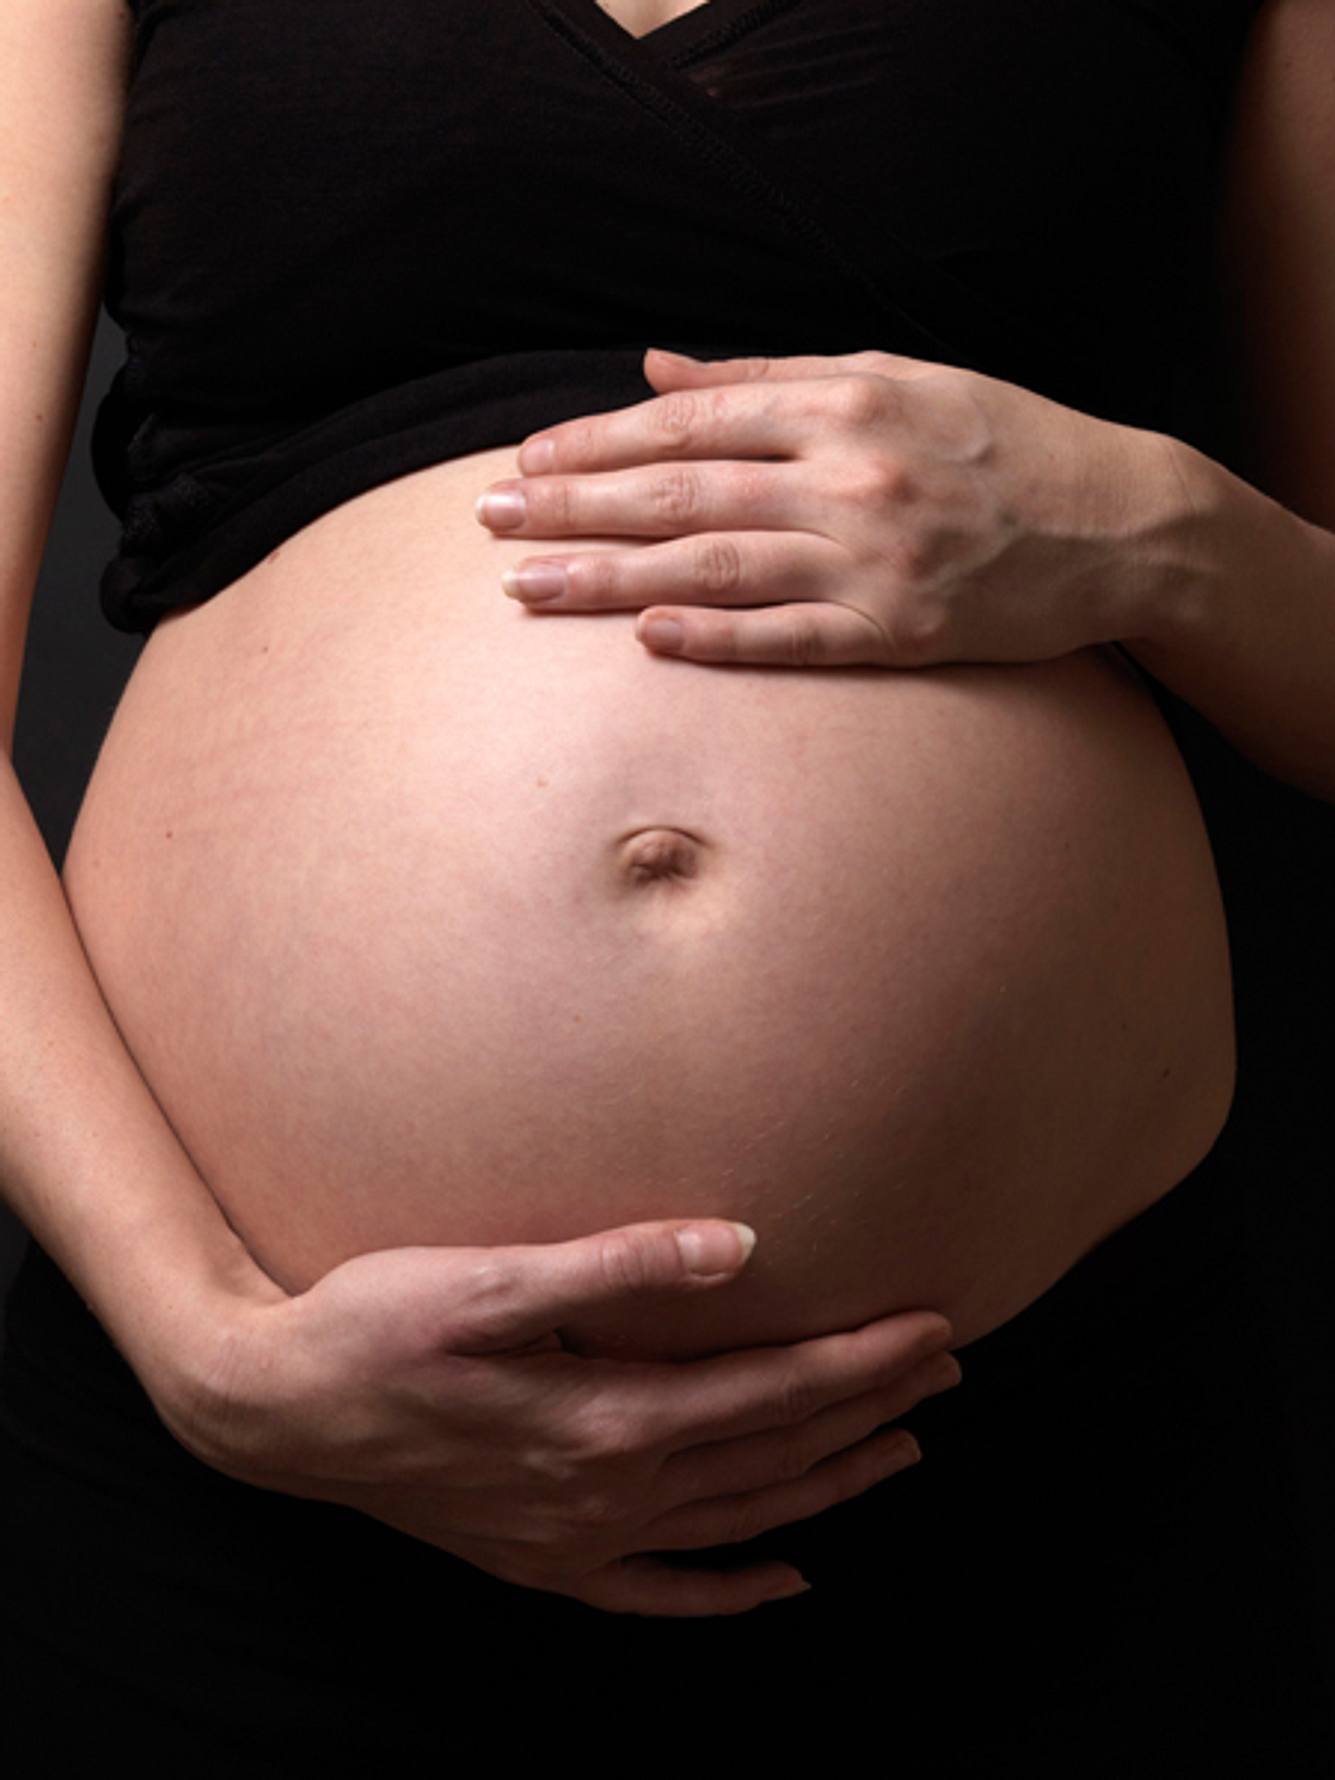 verhuetungsmittel ist es moeglich trotz spirale schwanger zu werden h